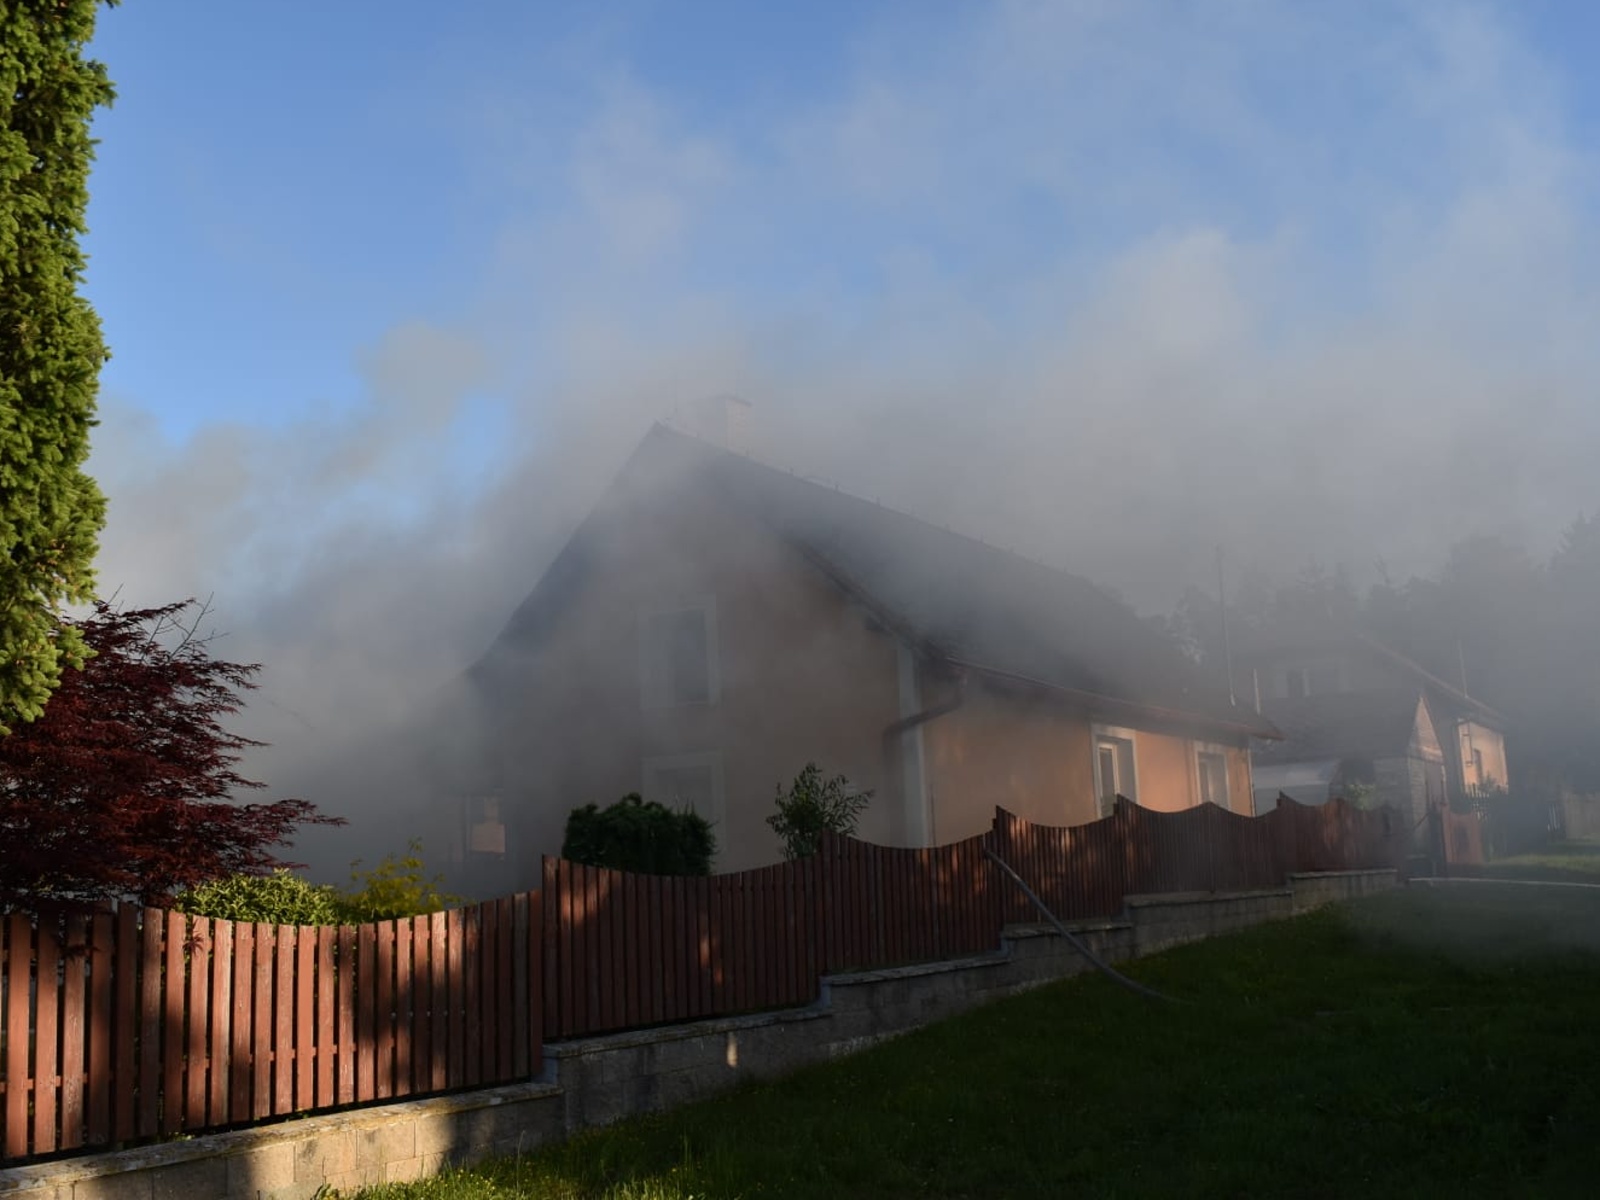 002-Požár kůlny a části domu v Hetlíně.jpeg